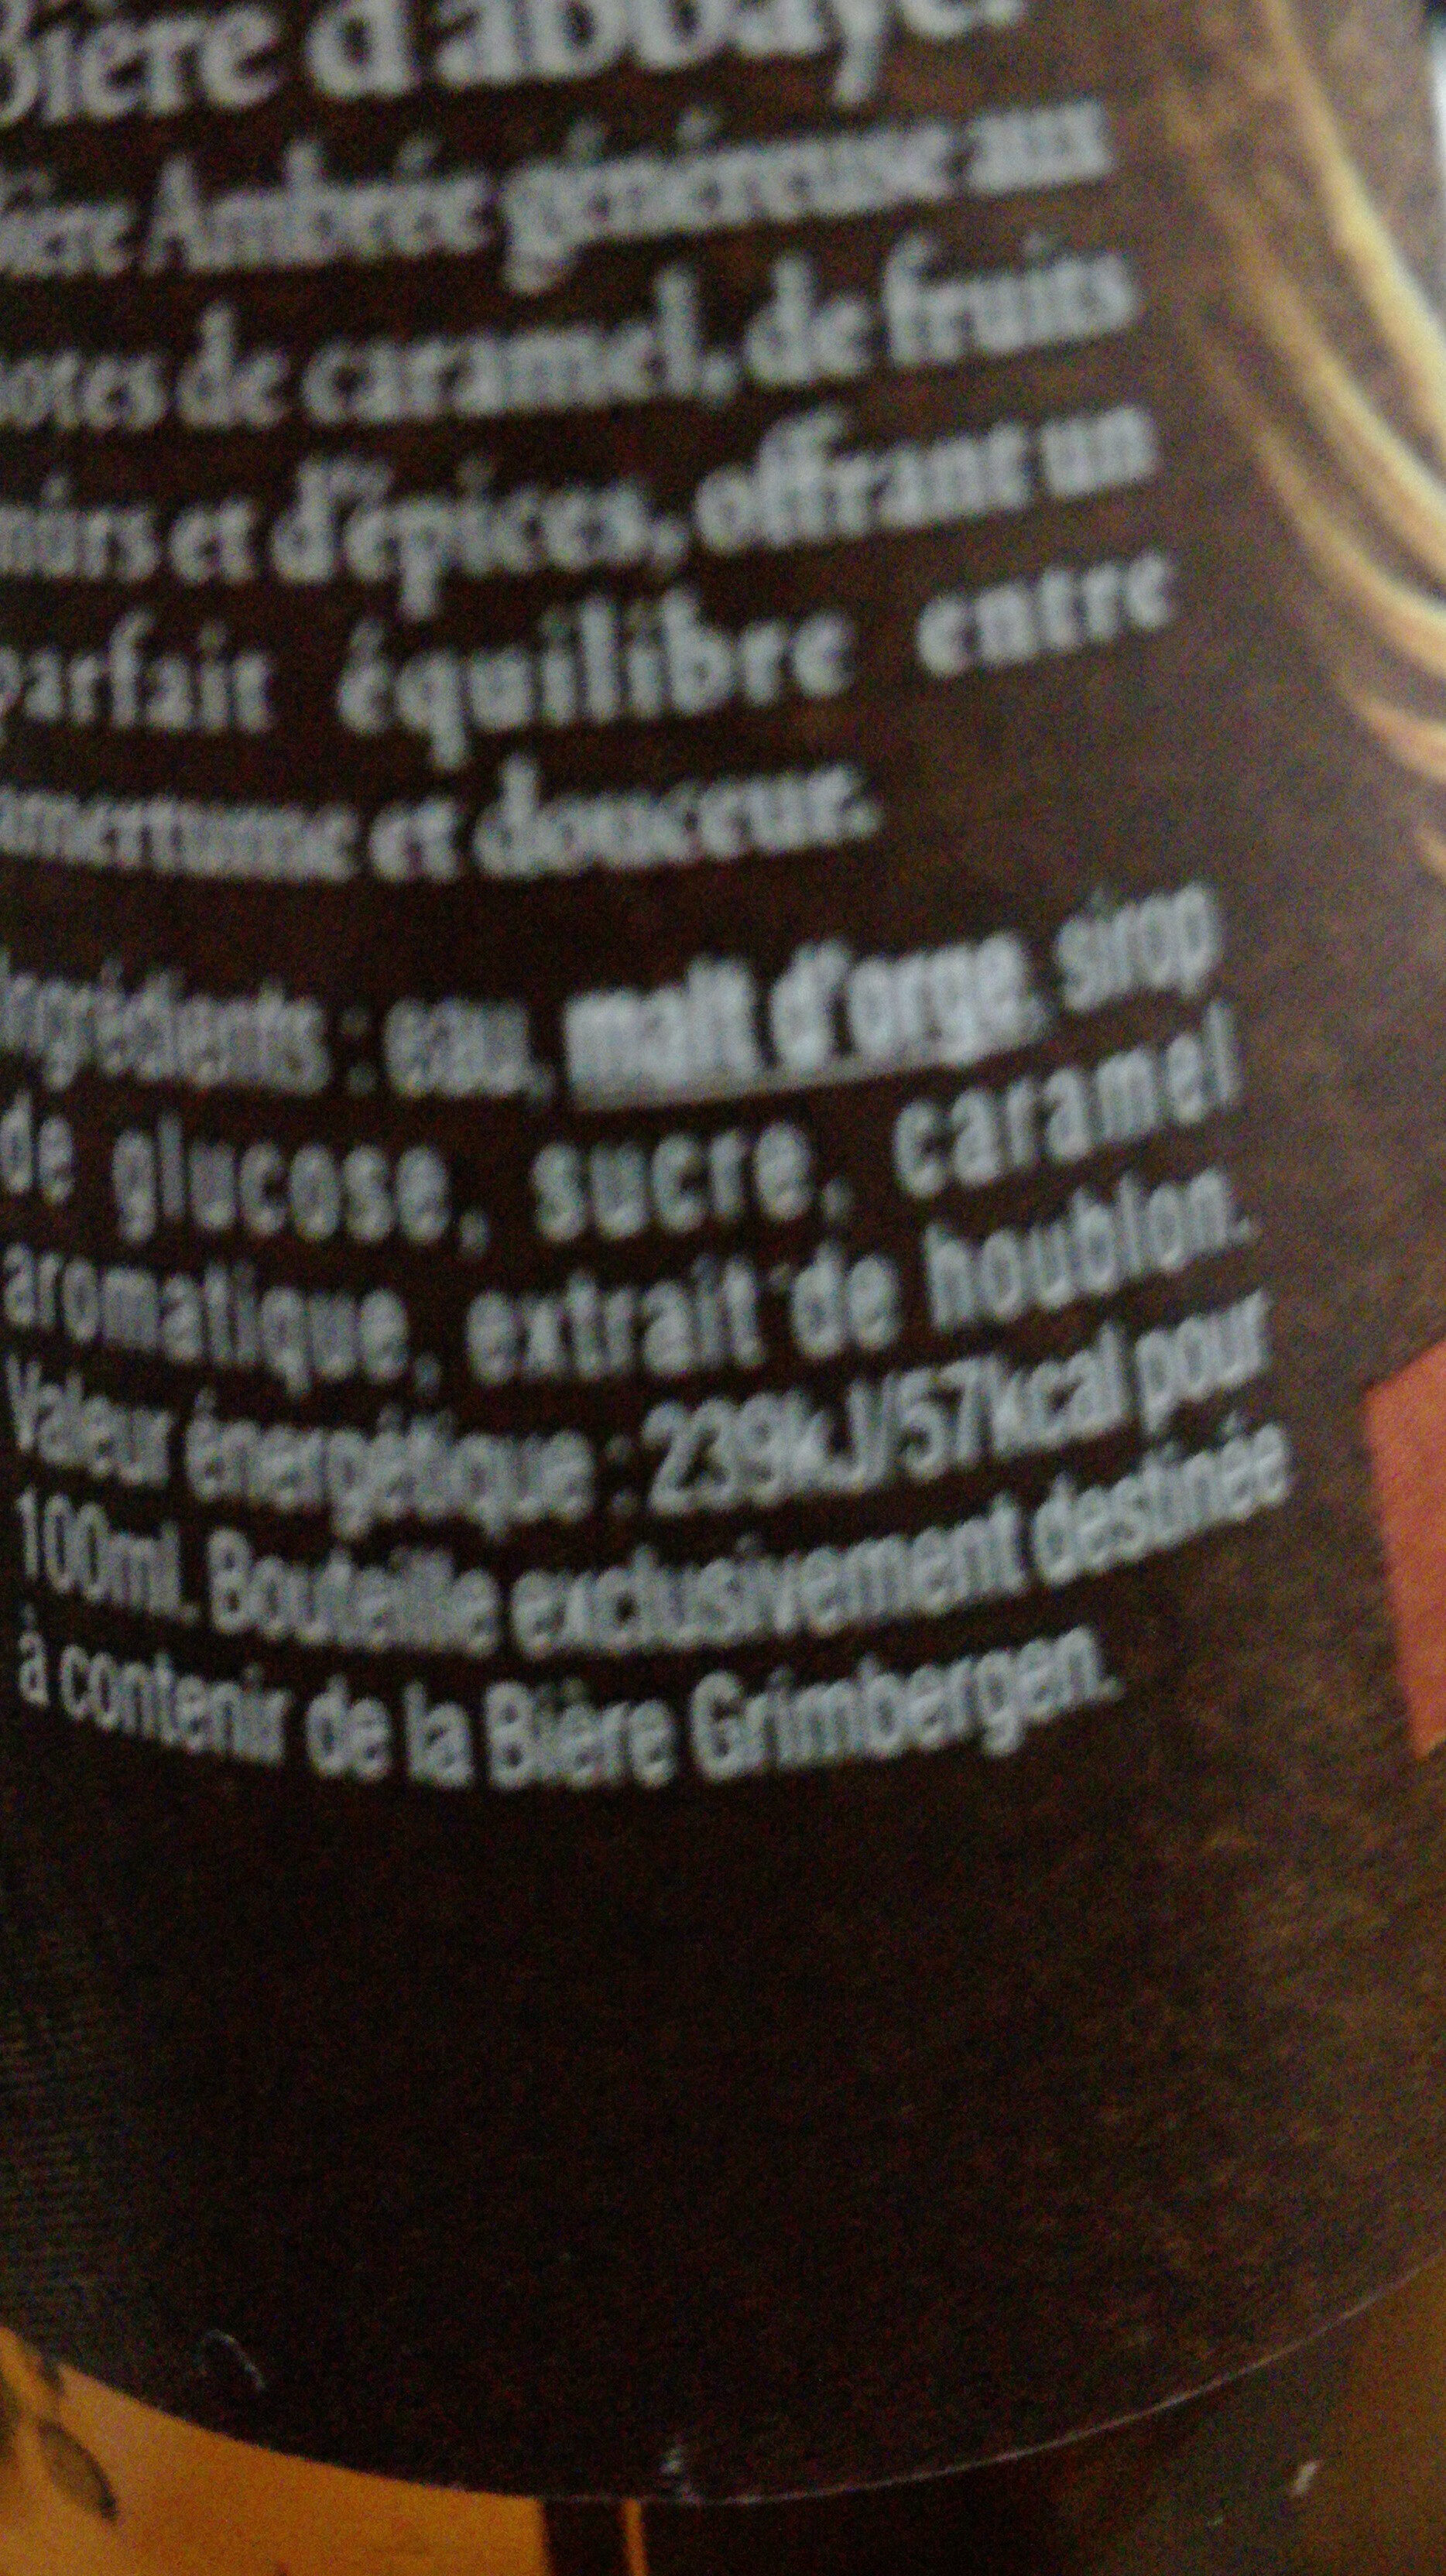 Grimbergen 25 cl Grimbergen Ambrée 6.5 DEGRE ALCOOL - Ingredients - fr